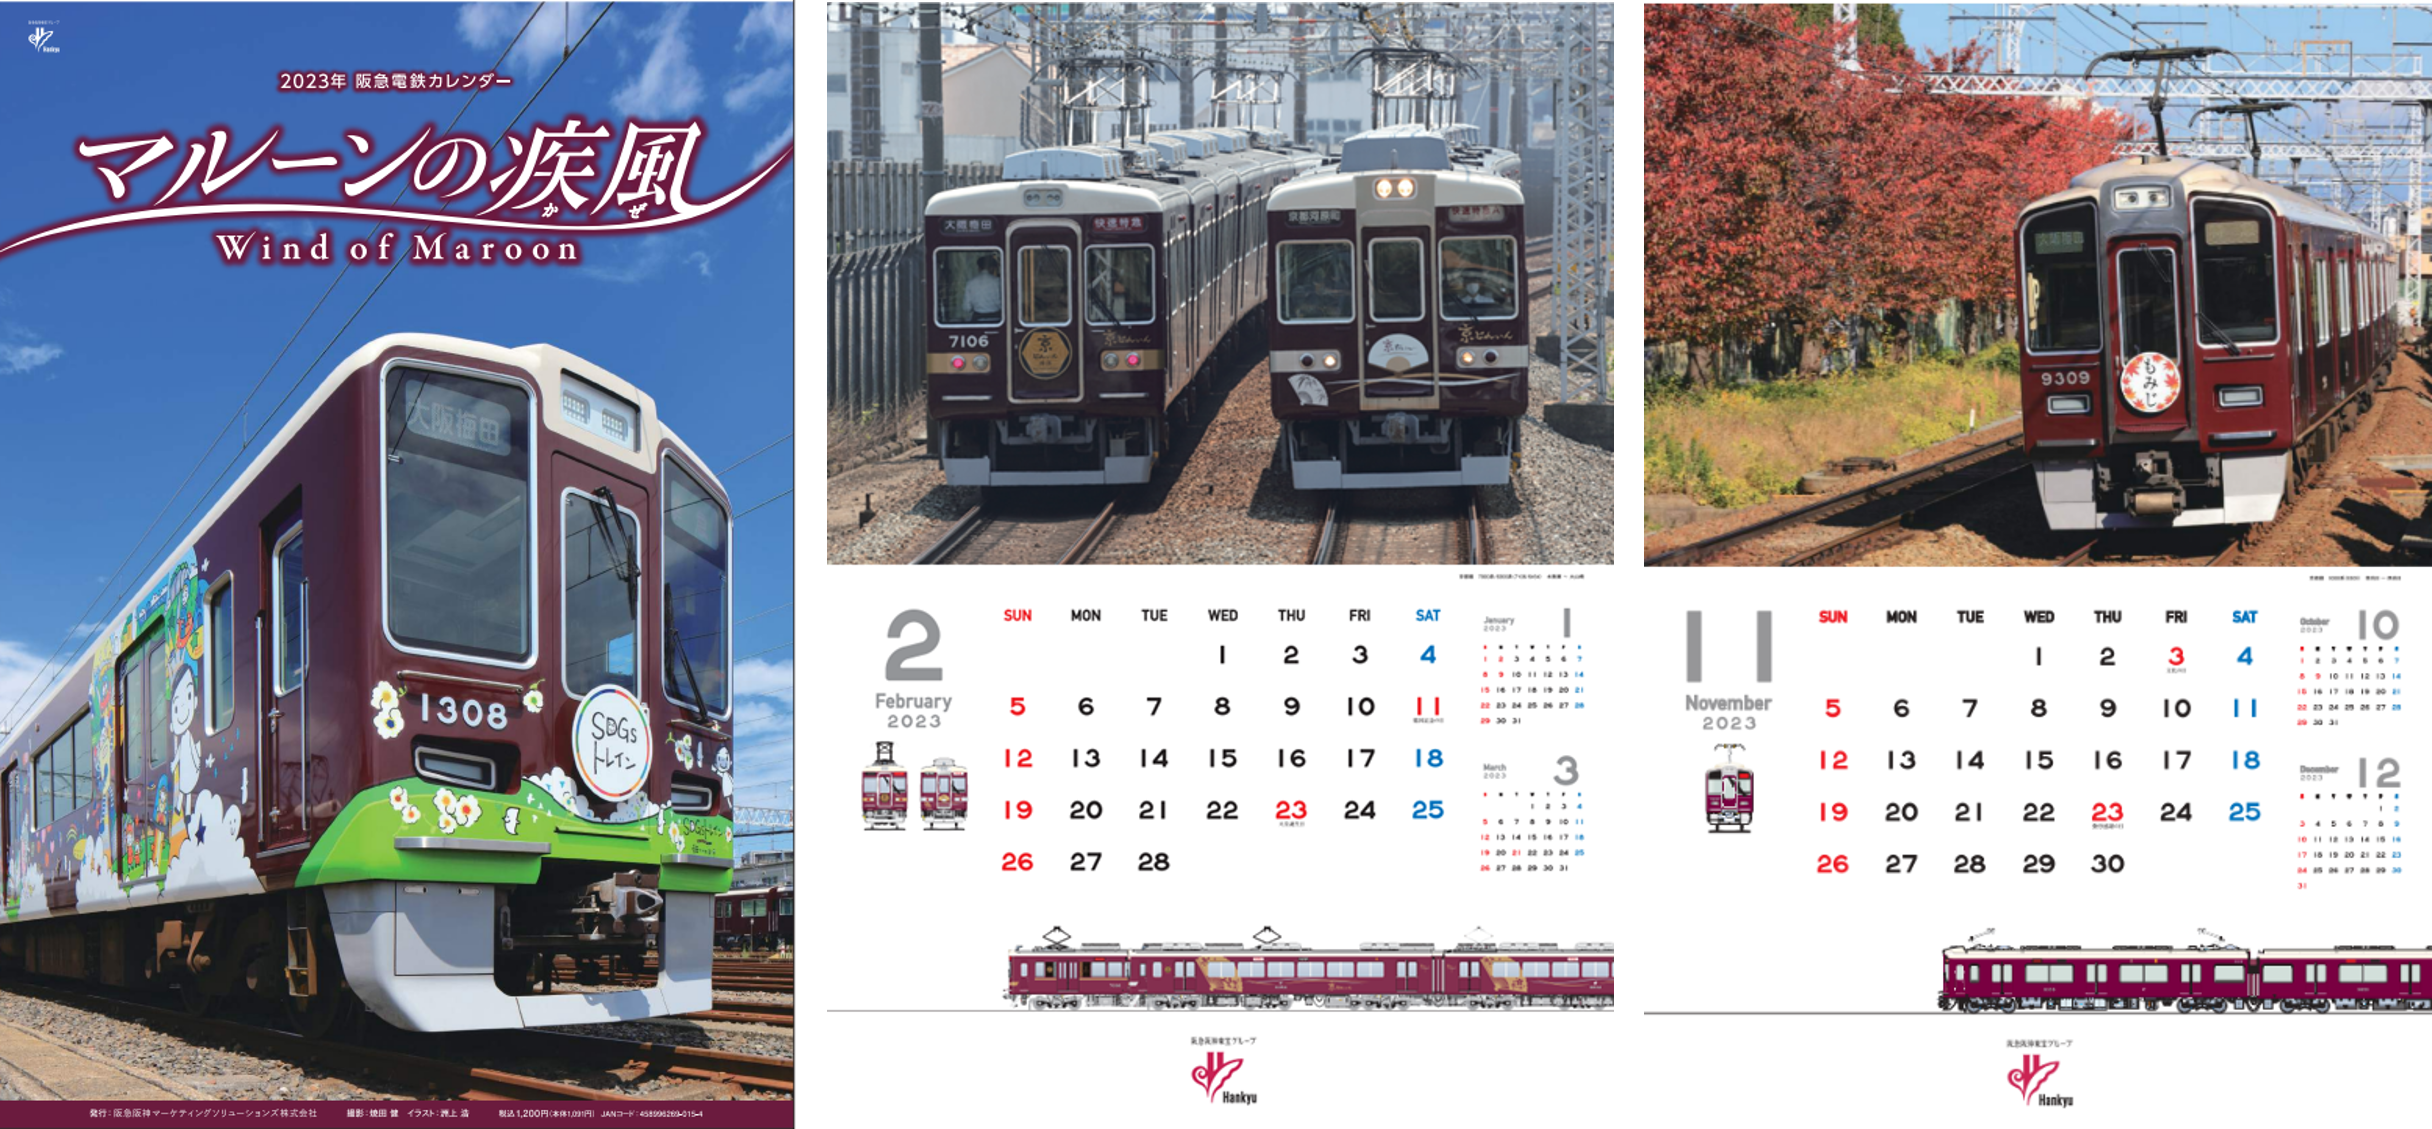 2023年版 阪急電鉄カレンダー「マルーンの疾風(かぜ)」を発売します！